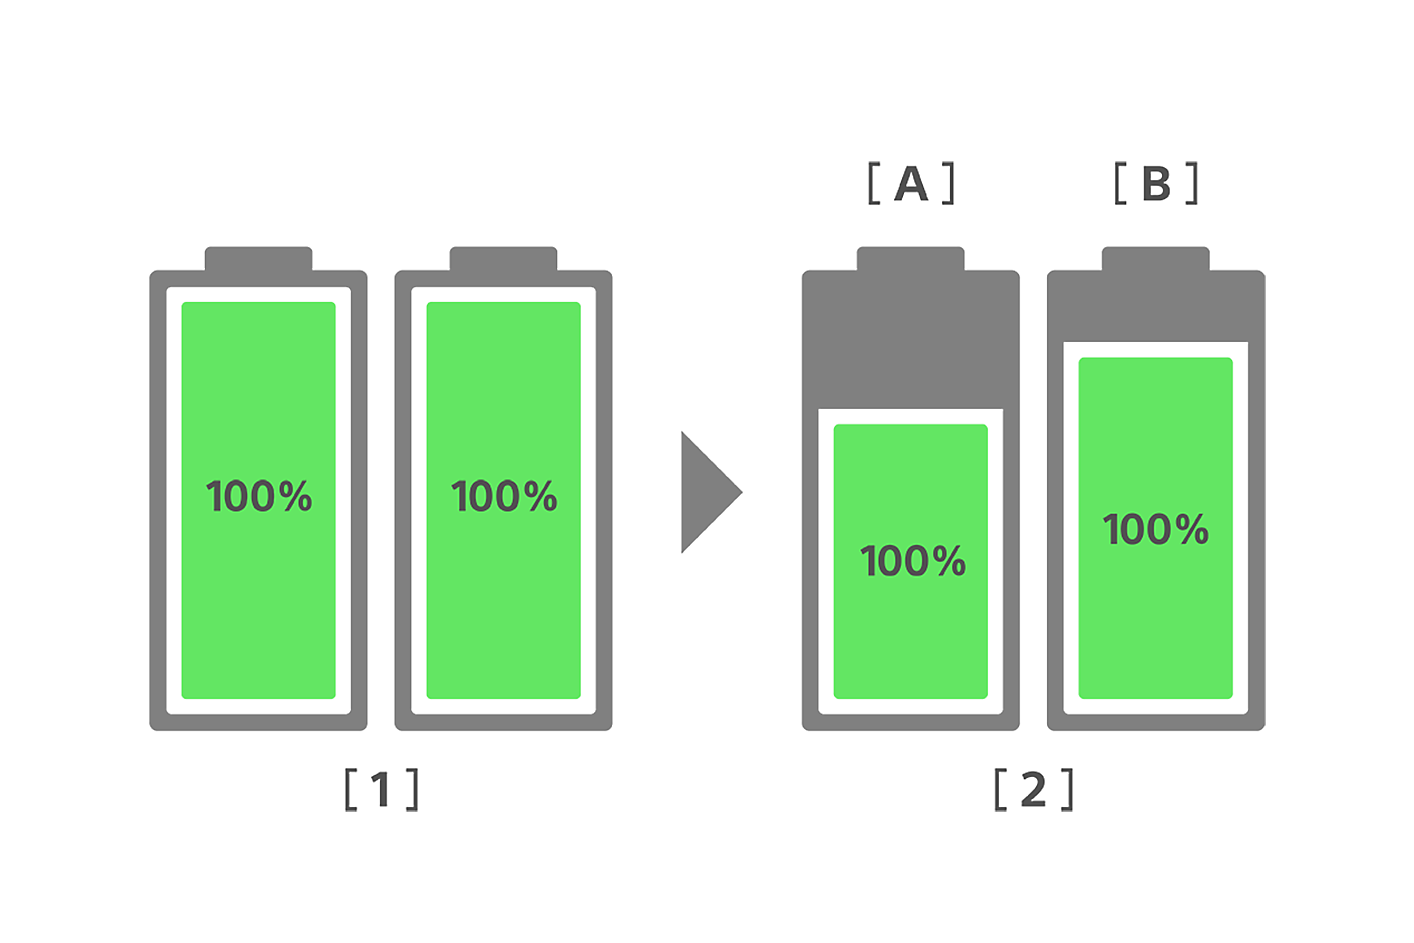 圖像裡比較傳統智慧型手機電池和 Xperia 新電池的電池健康度